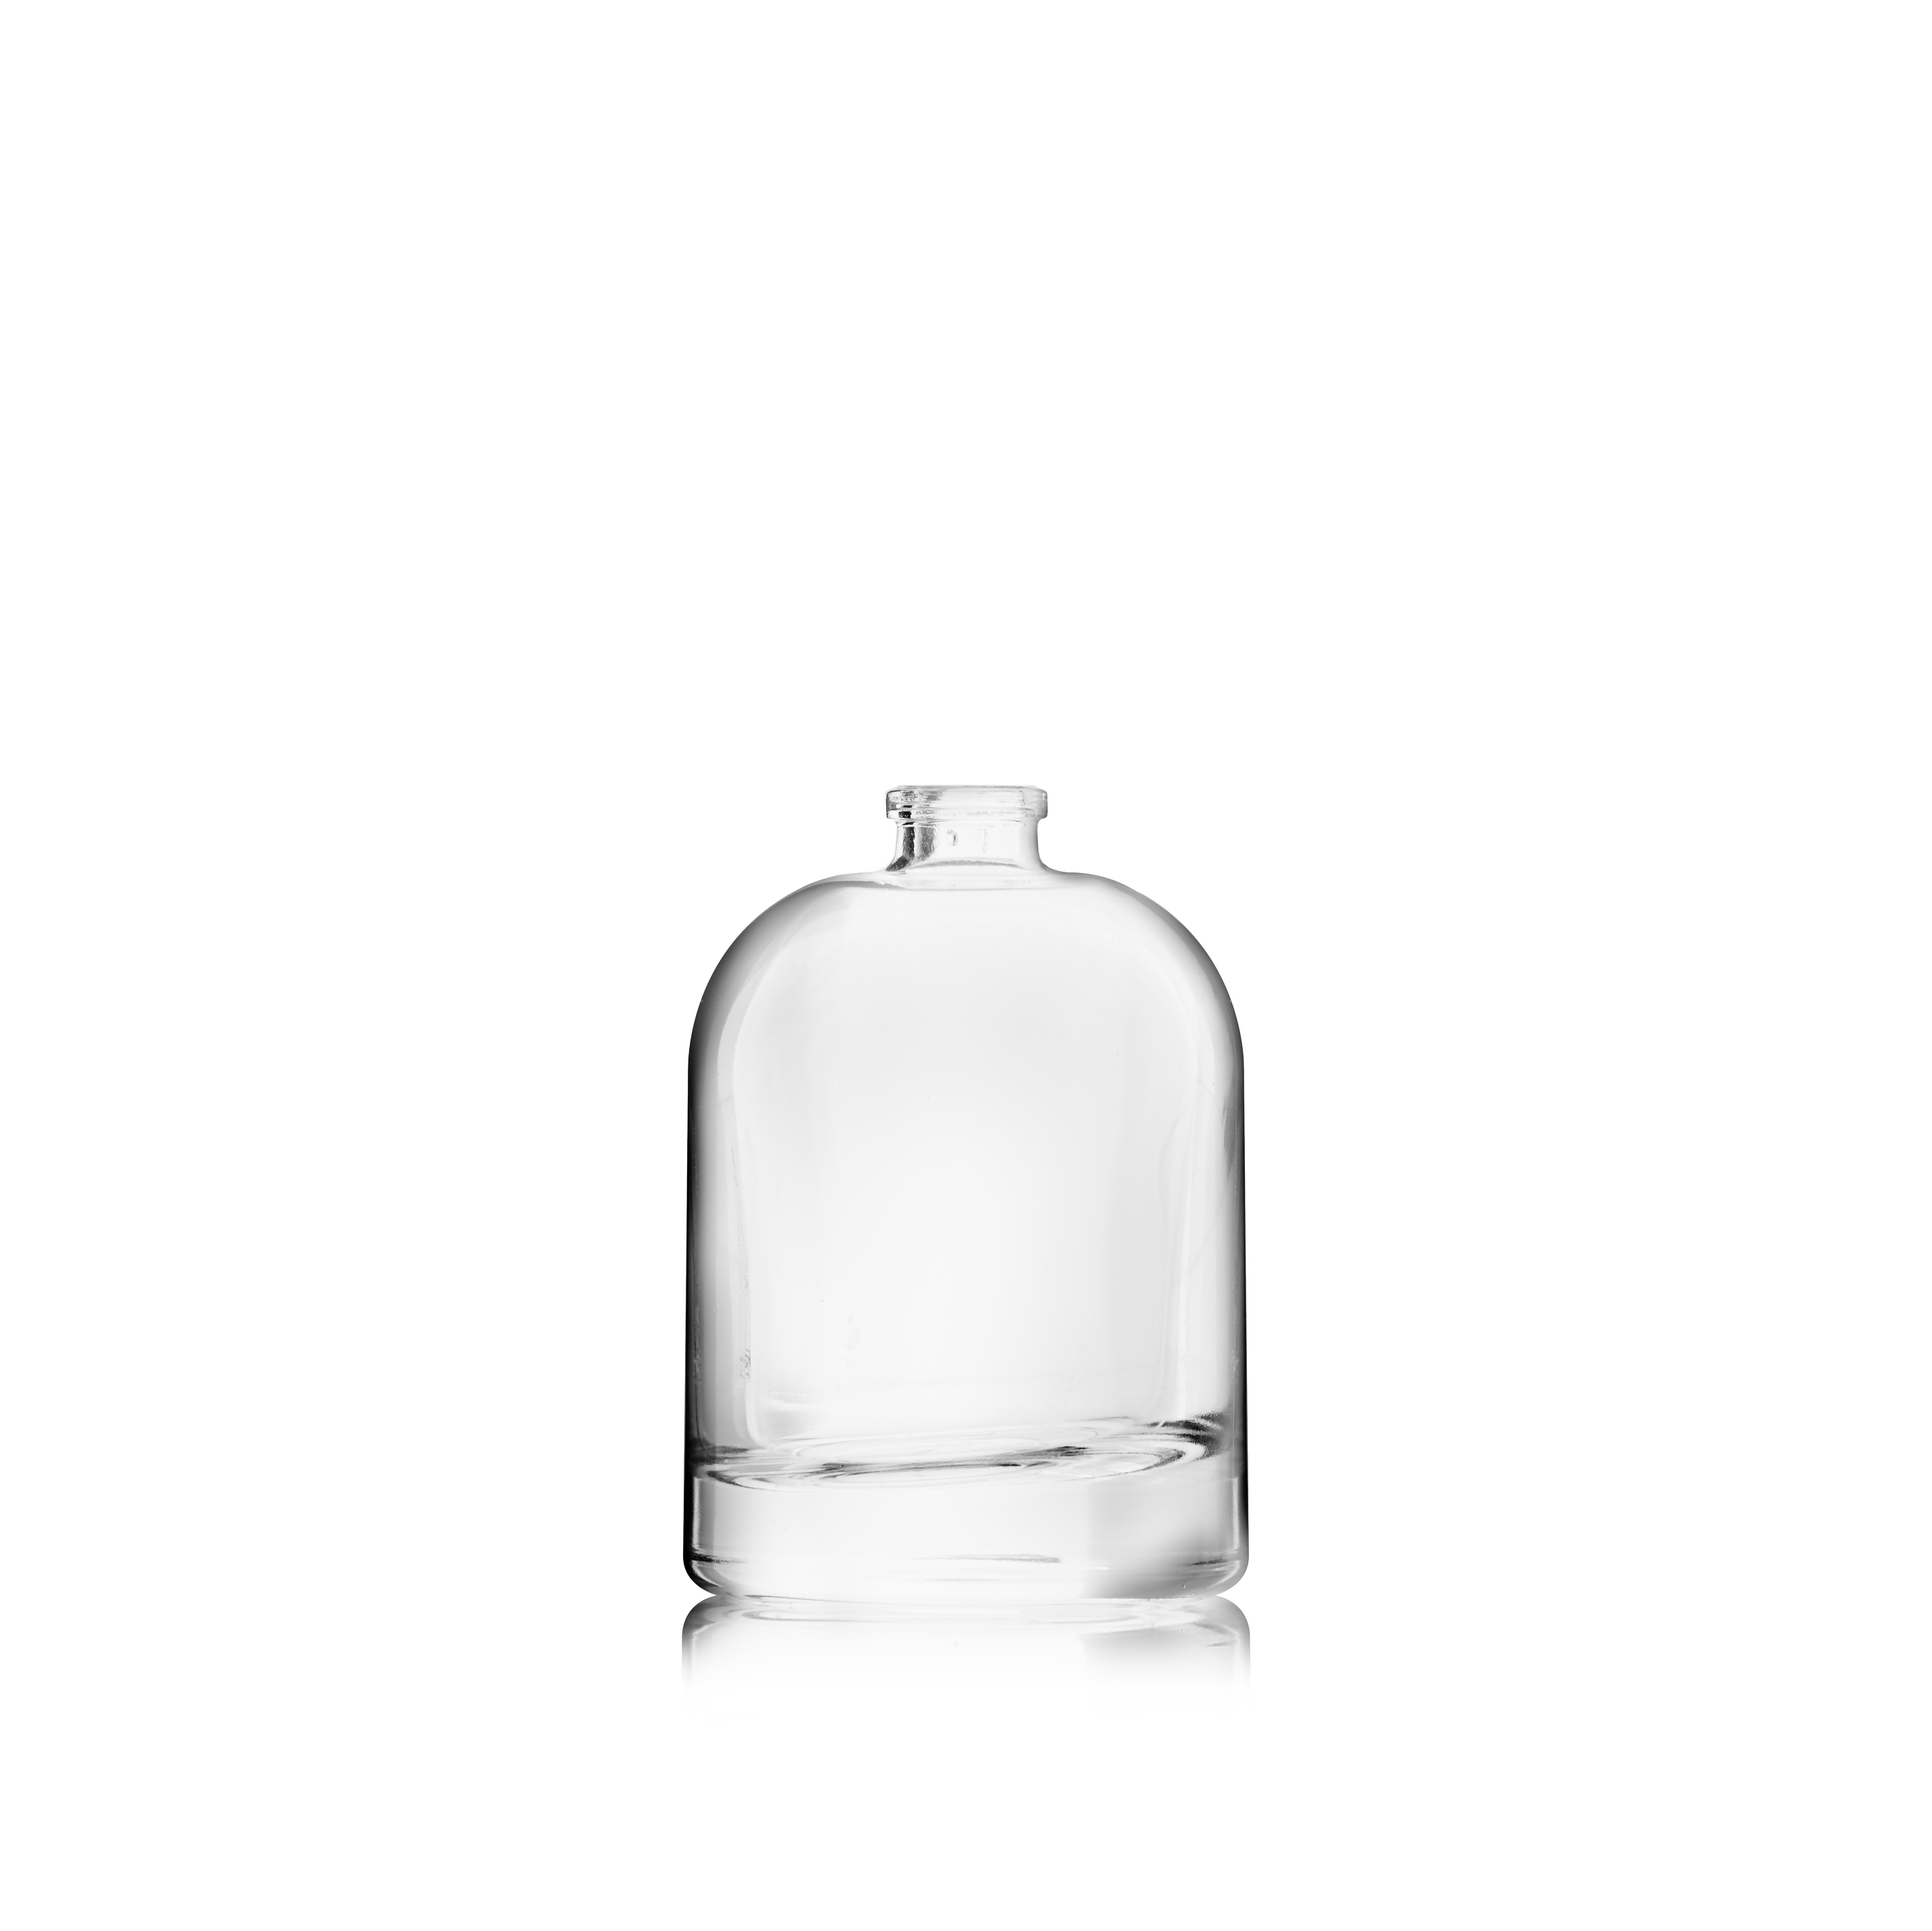 Perfume bottle Hazel 50 ml, FEA 15, Flint